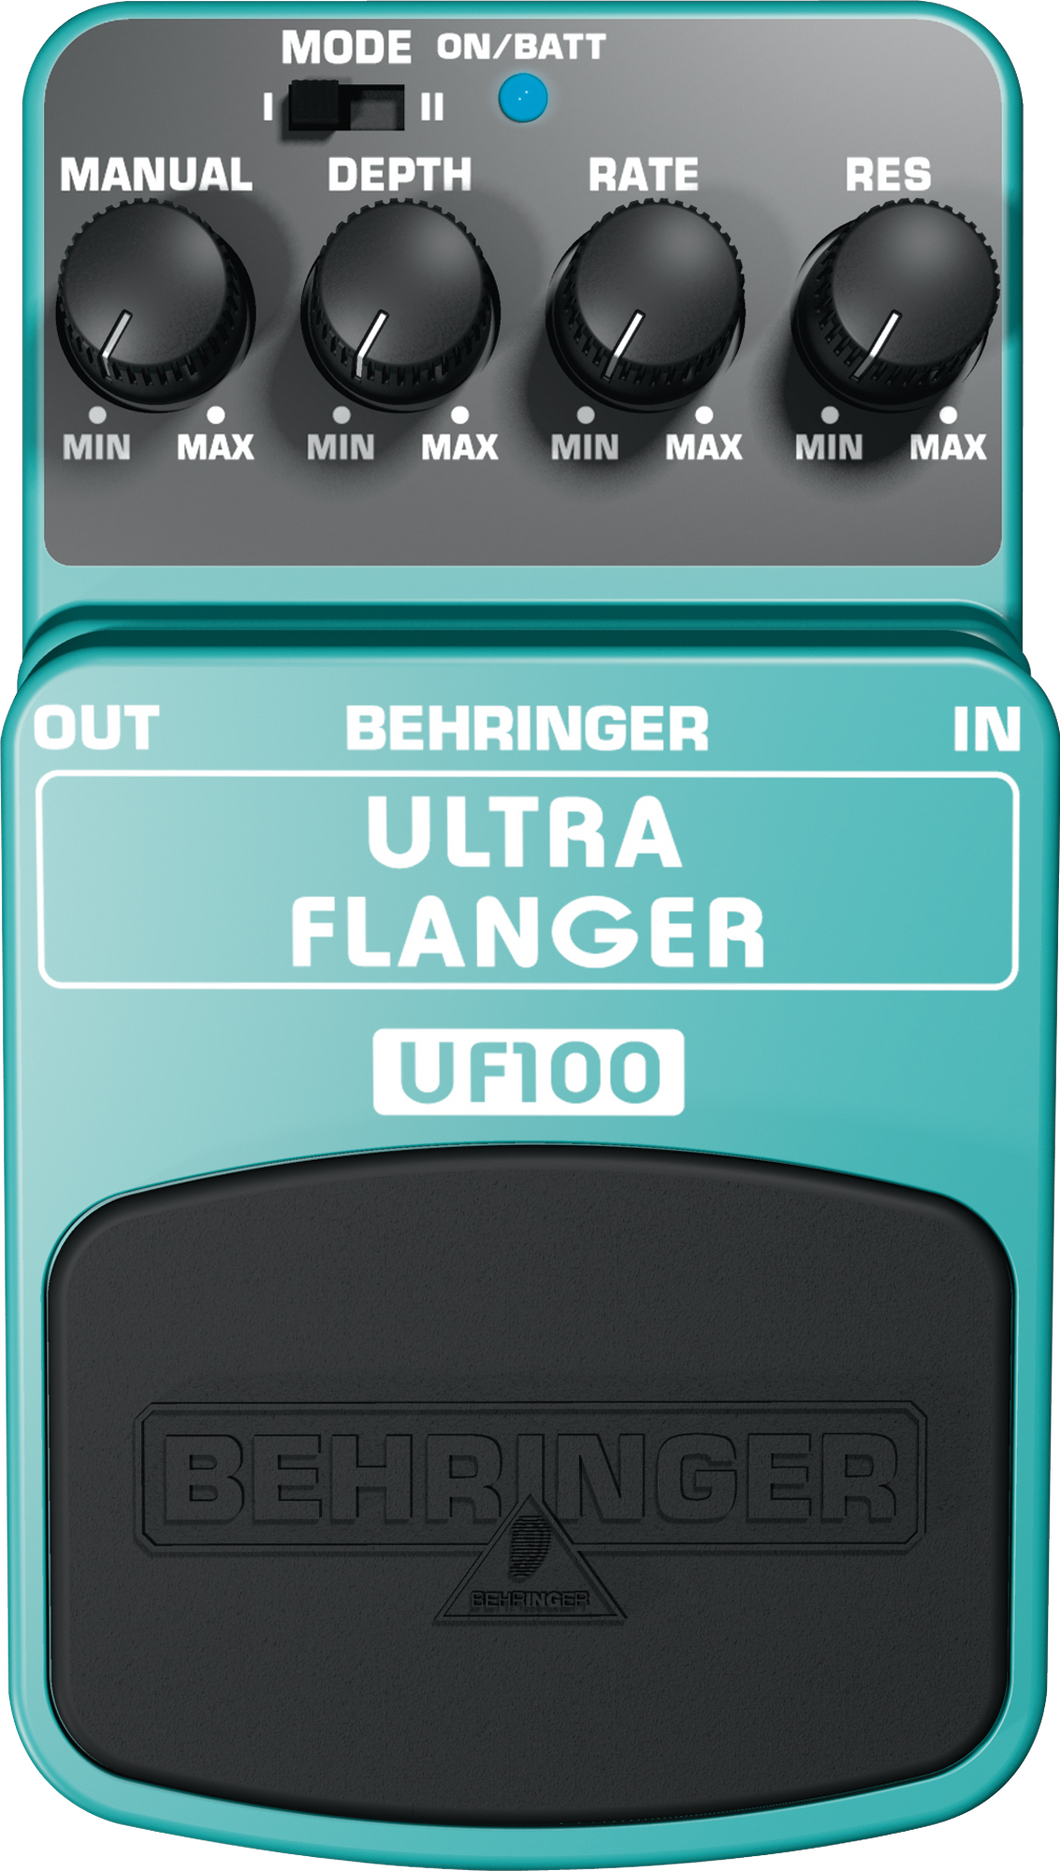 ULTRA FLANGER UF100